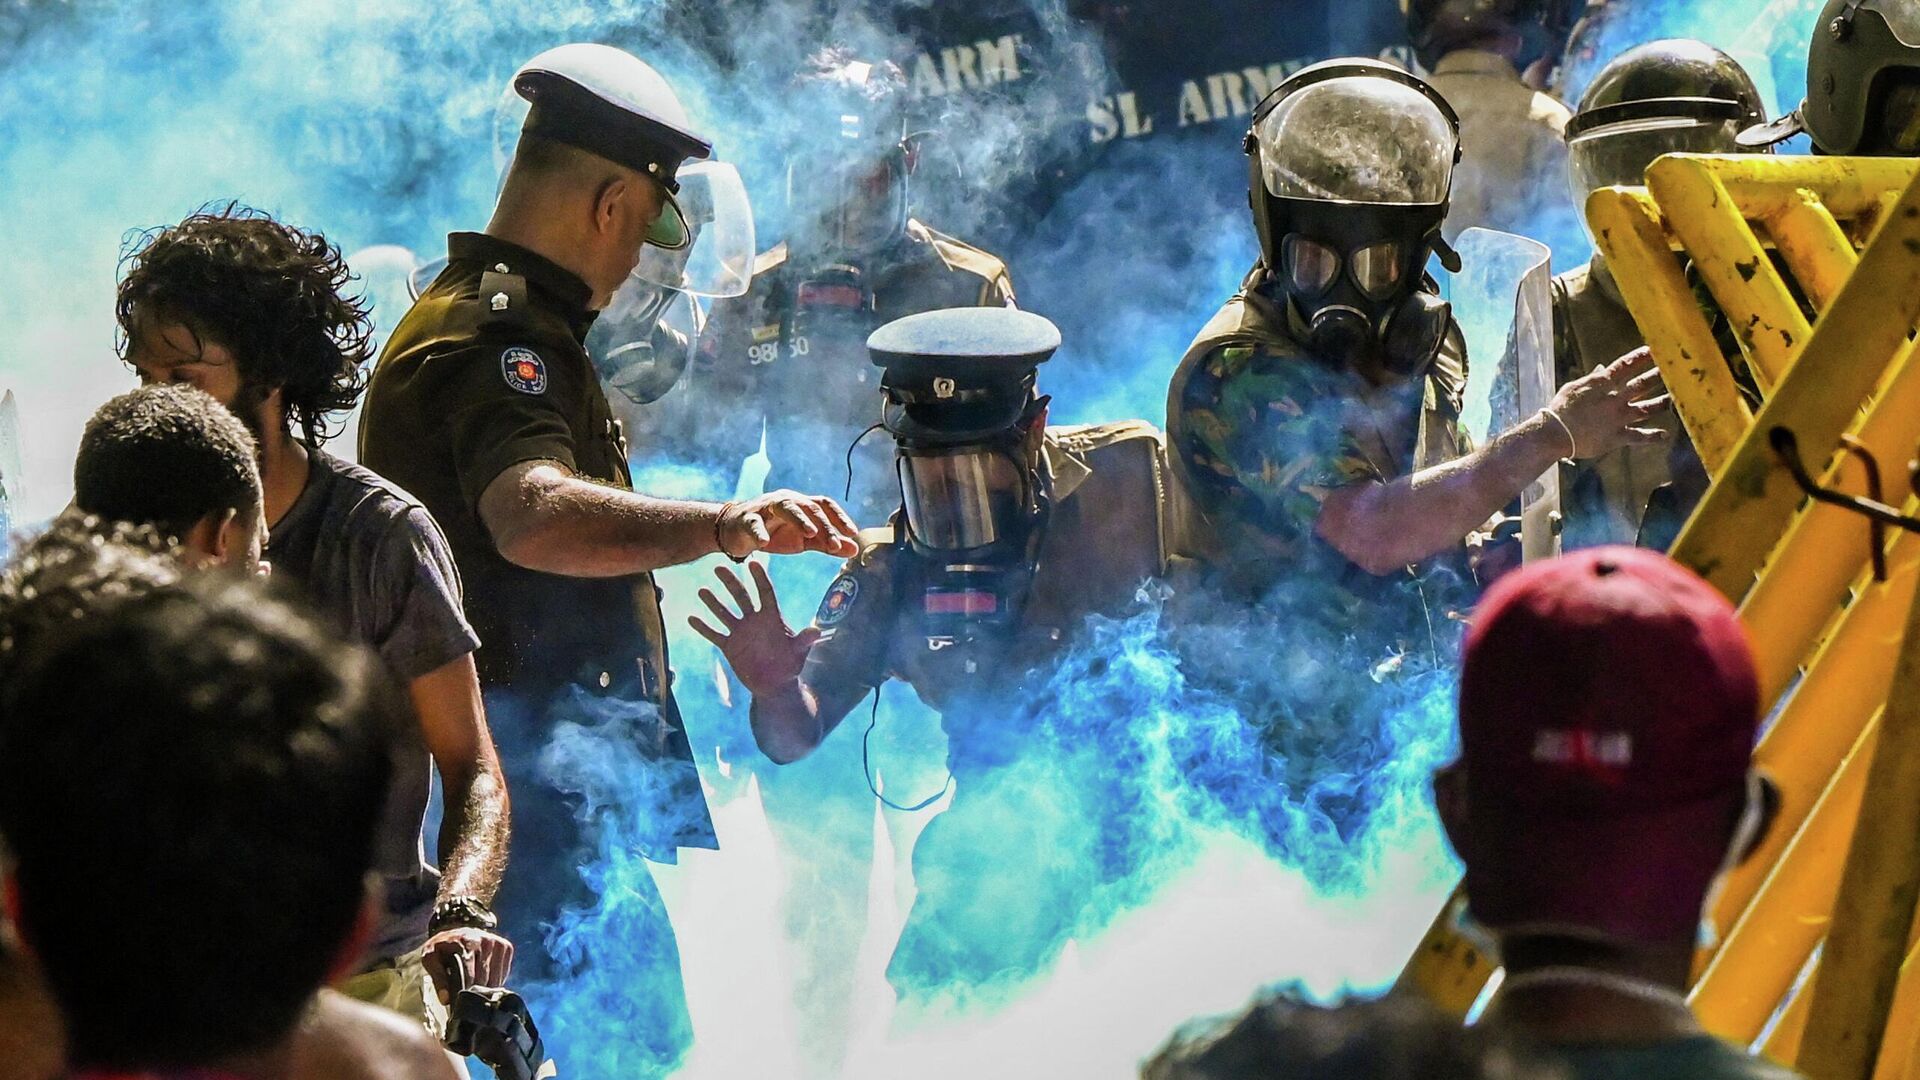 Полиция применяет слезоточивый газ для разгона демонстрации студентов в Коломбо  - Sputnik Таджикистан, 1920, 04.07.2022